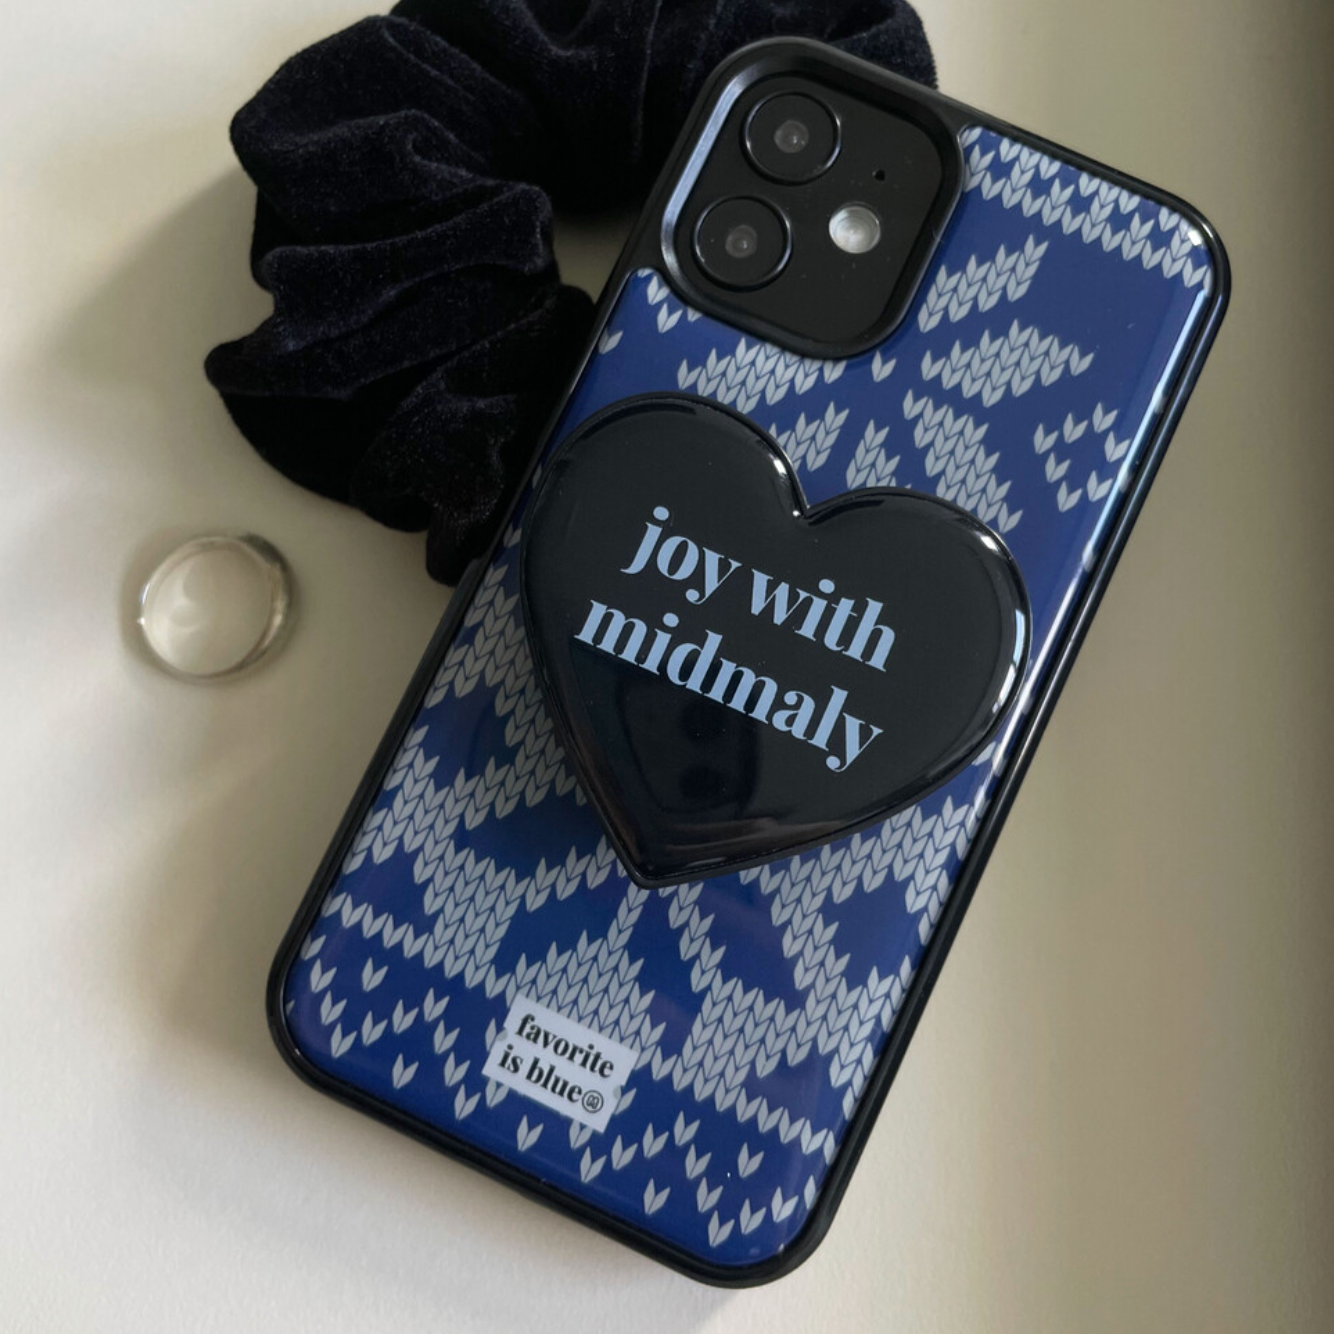 [midmaly] Knit Epoxy Phone Case